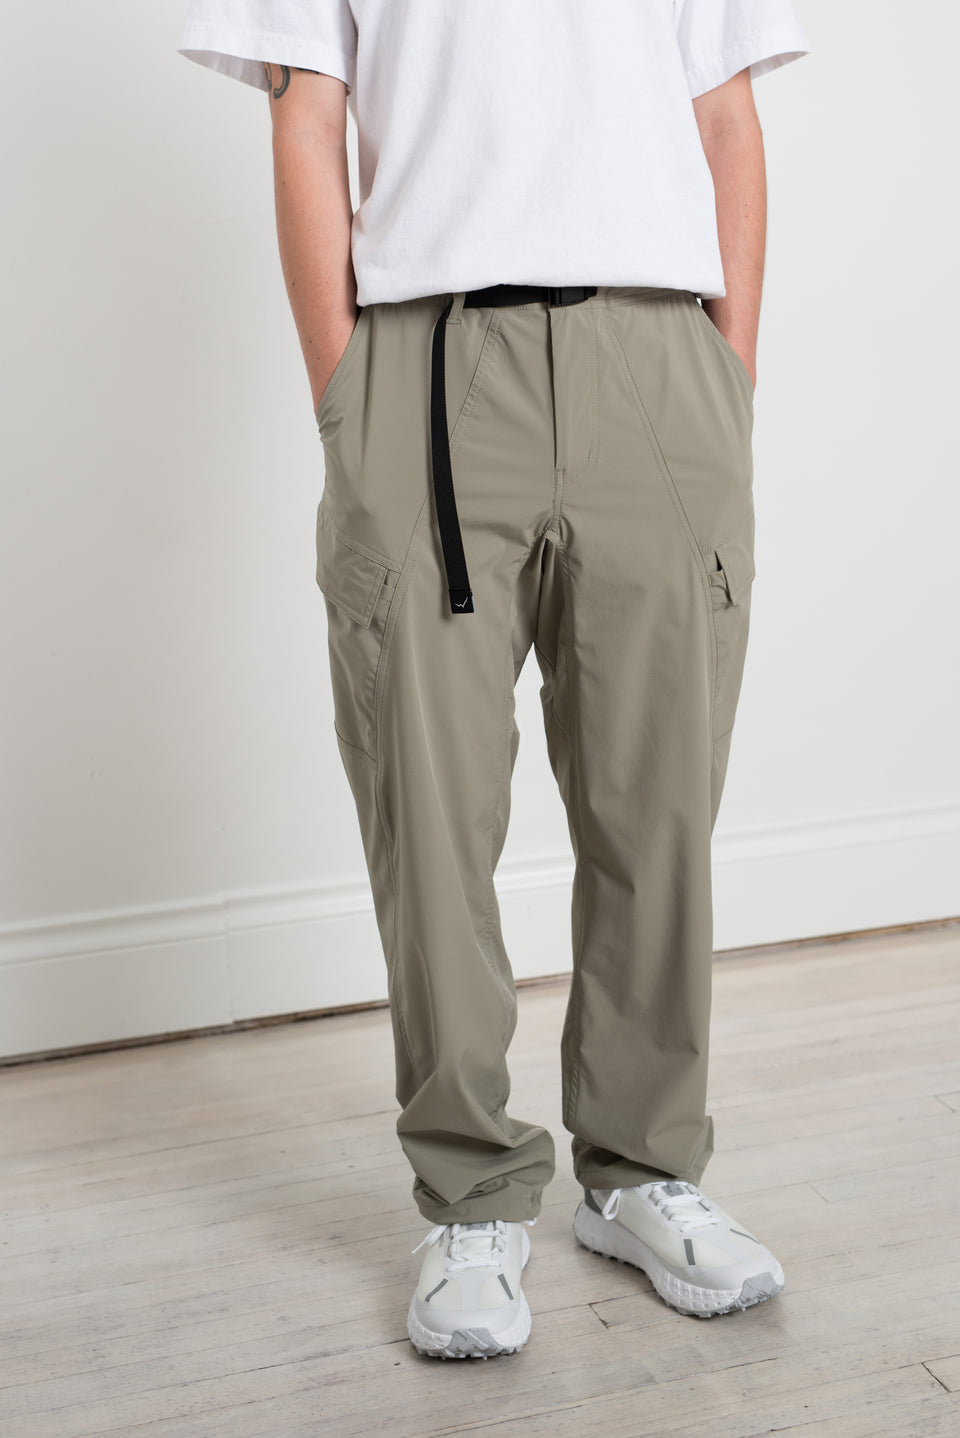  ZARKL Pants for Women - Flap Pocket Side Cargo Pants